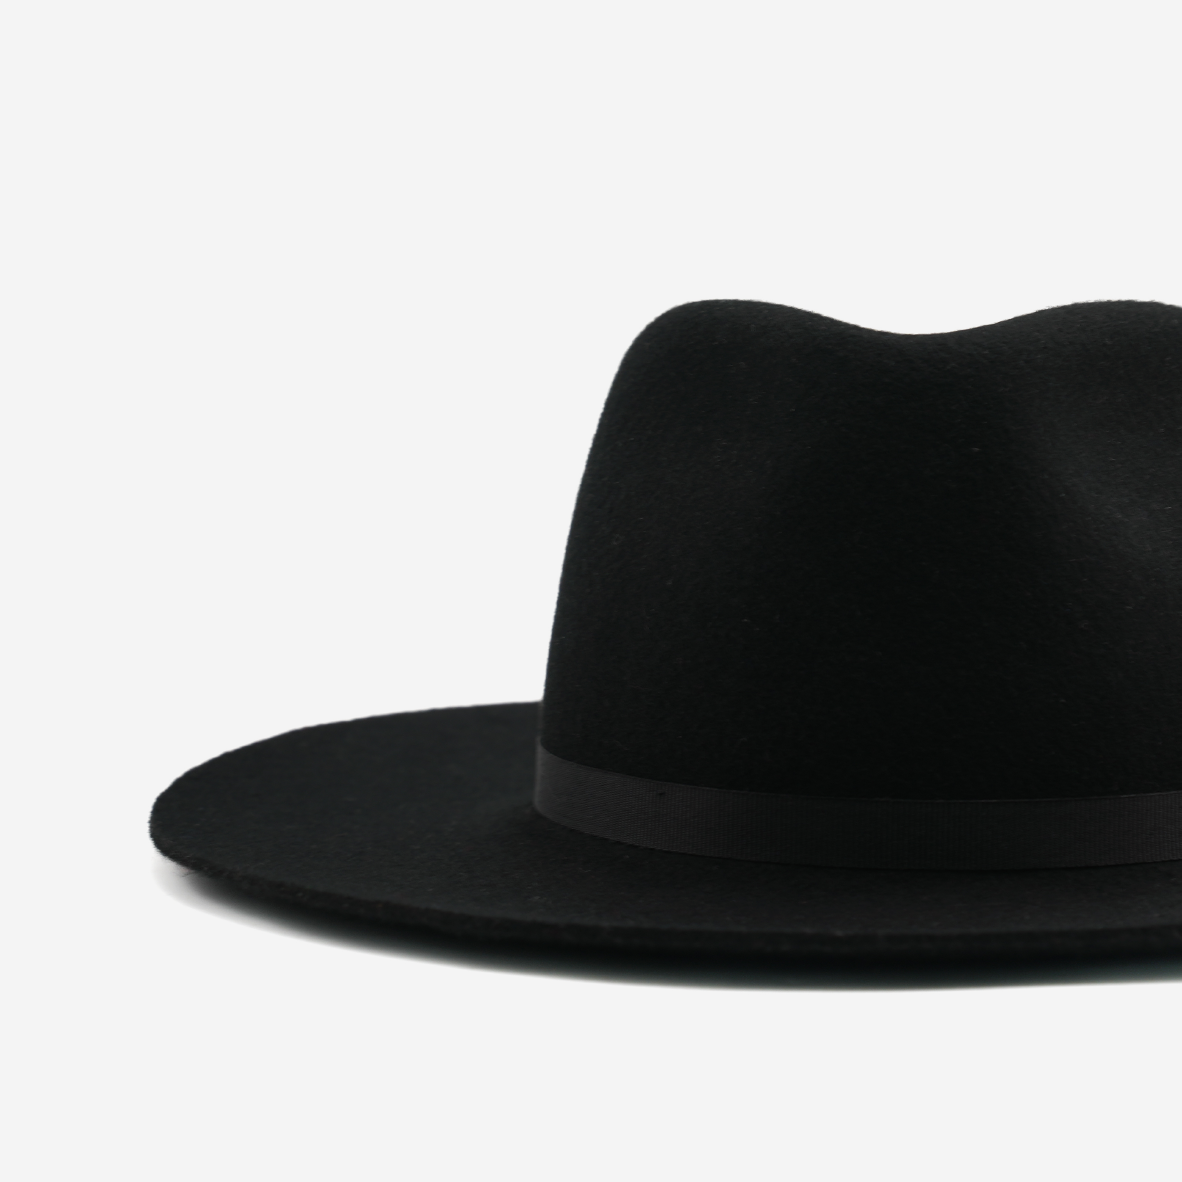 Nomad Hat - Black